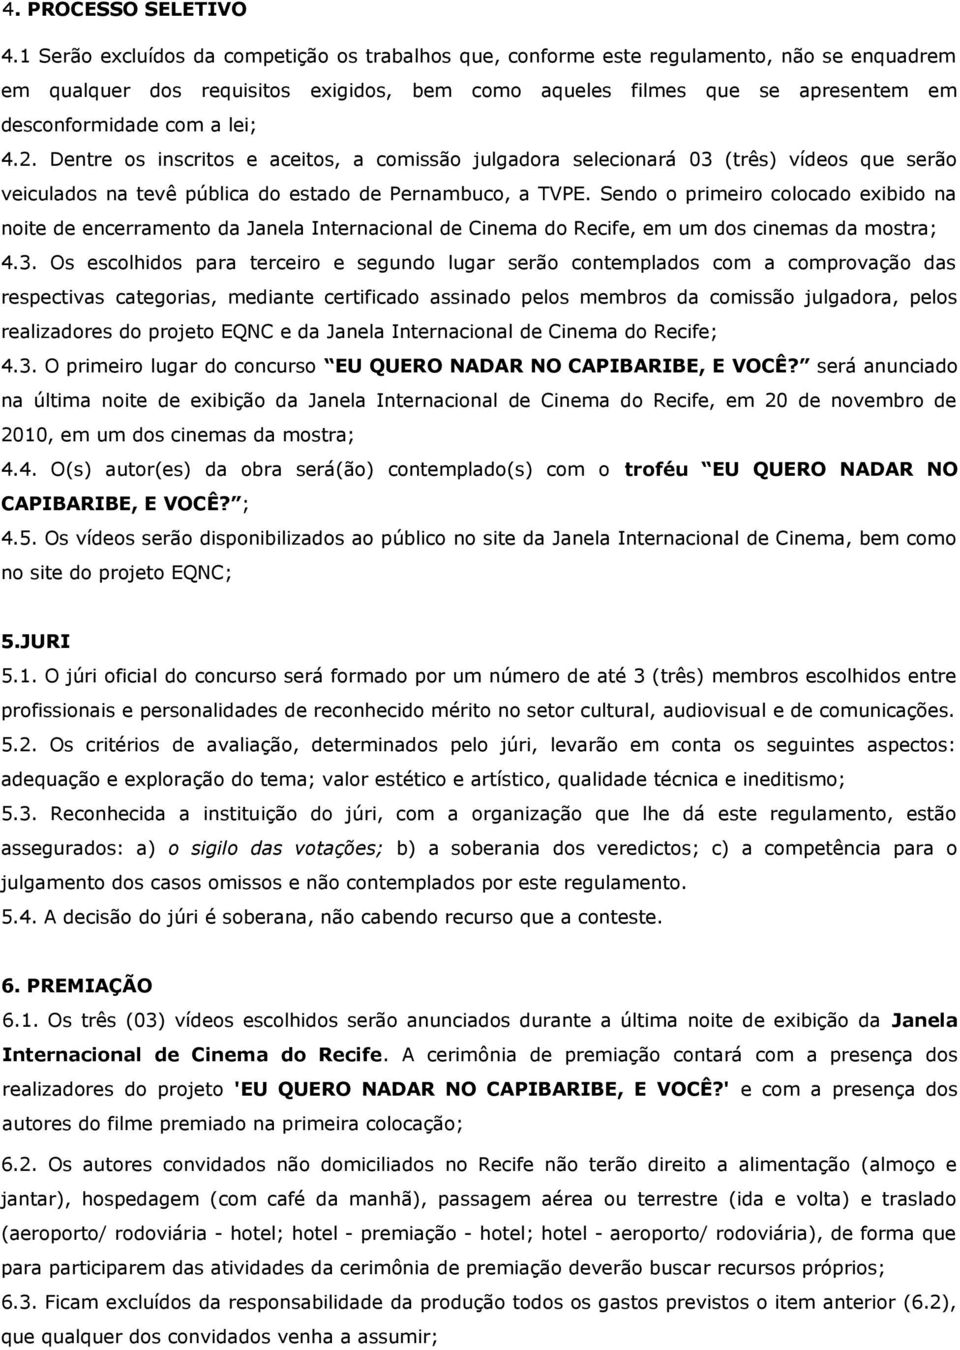 lei; 4.2. Dentre os inscritos e aceitos, a comissão julgadora selecionará 03 (três) vídeos que serão veiculados na tevê pública do estado de Pernambuco, a TVPE.